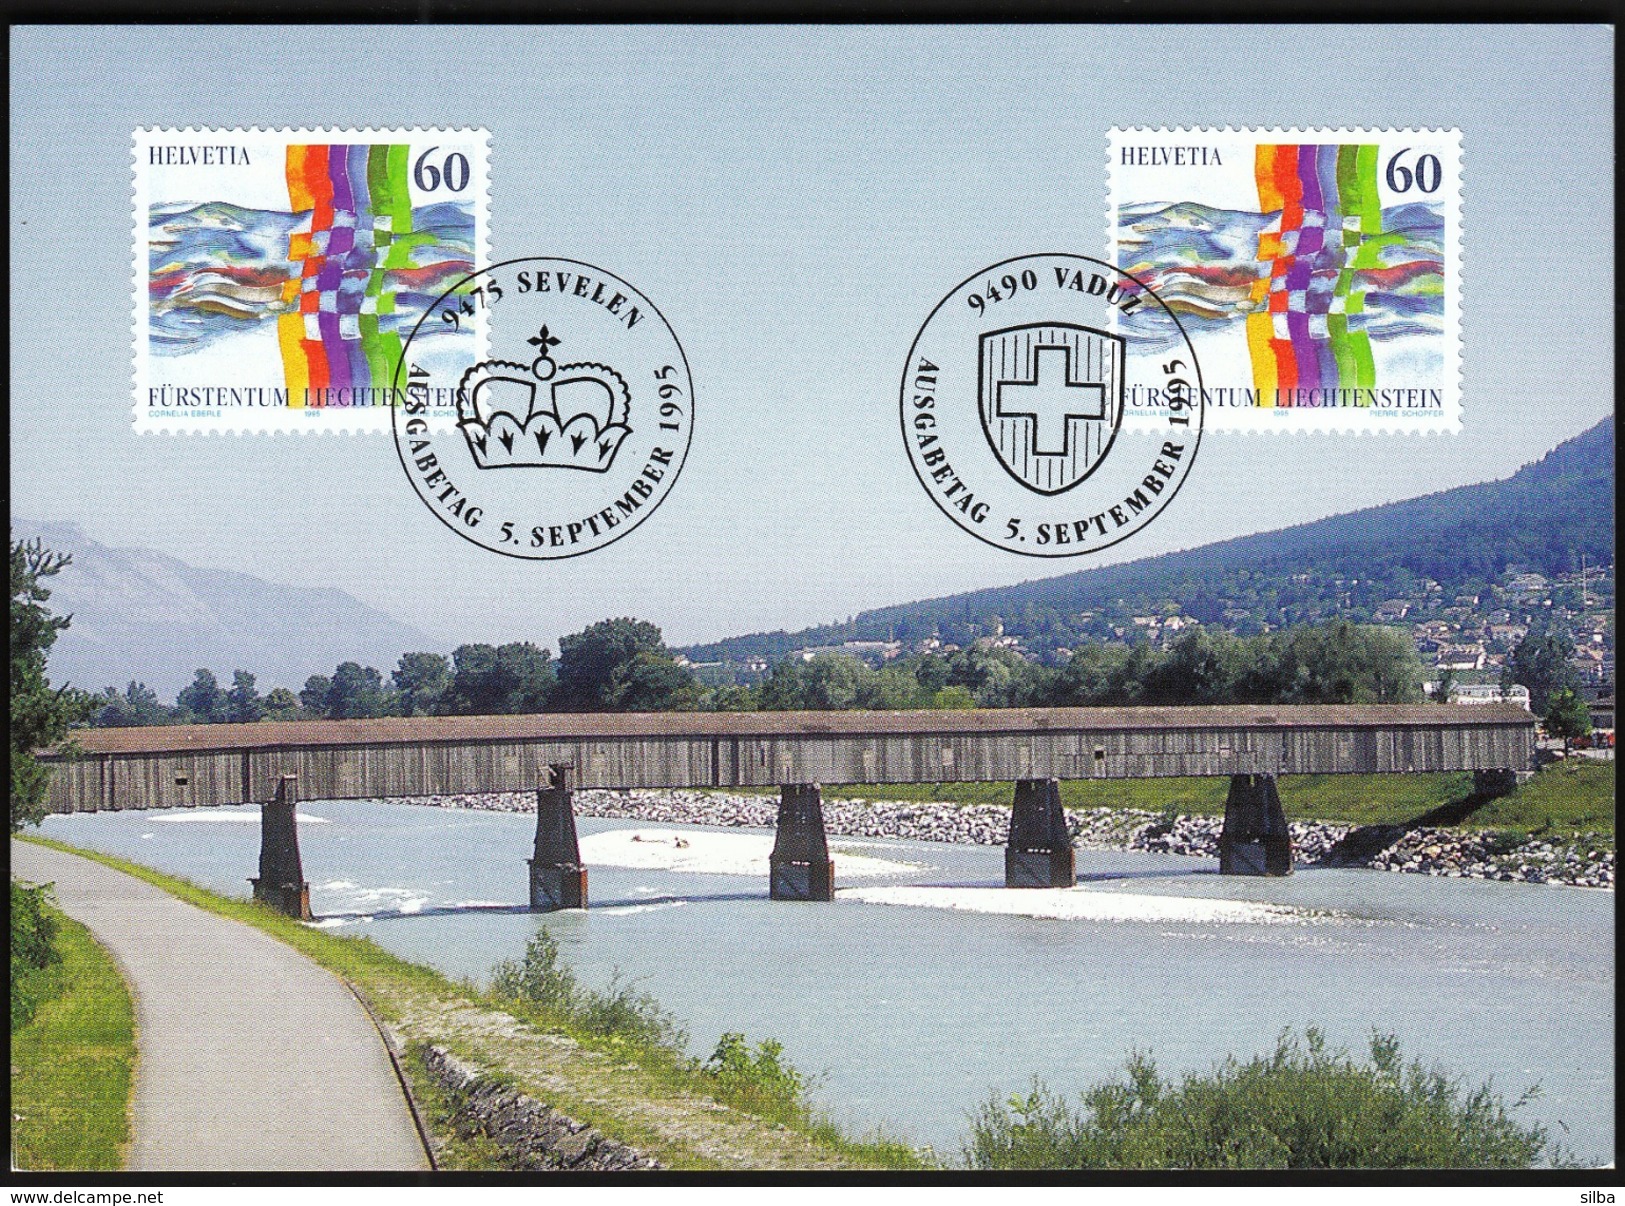 Switzerland With Liechtenstein 1995 / Rhine Bridge, Rheinbrücke Vaduz - Sevelen / MC Maximum Card / Joint Issue - Bridges